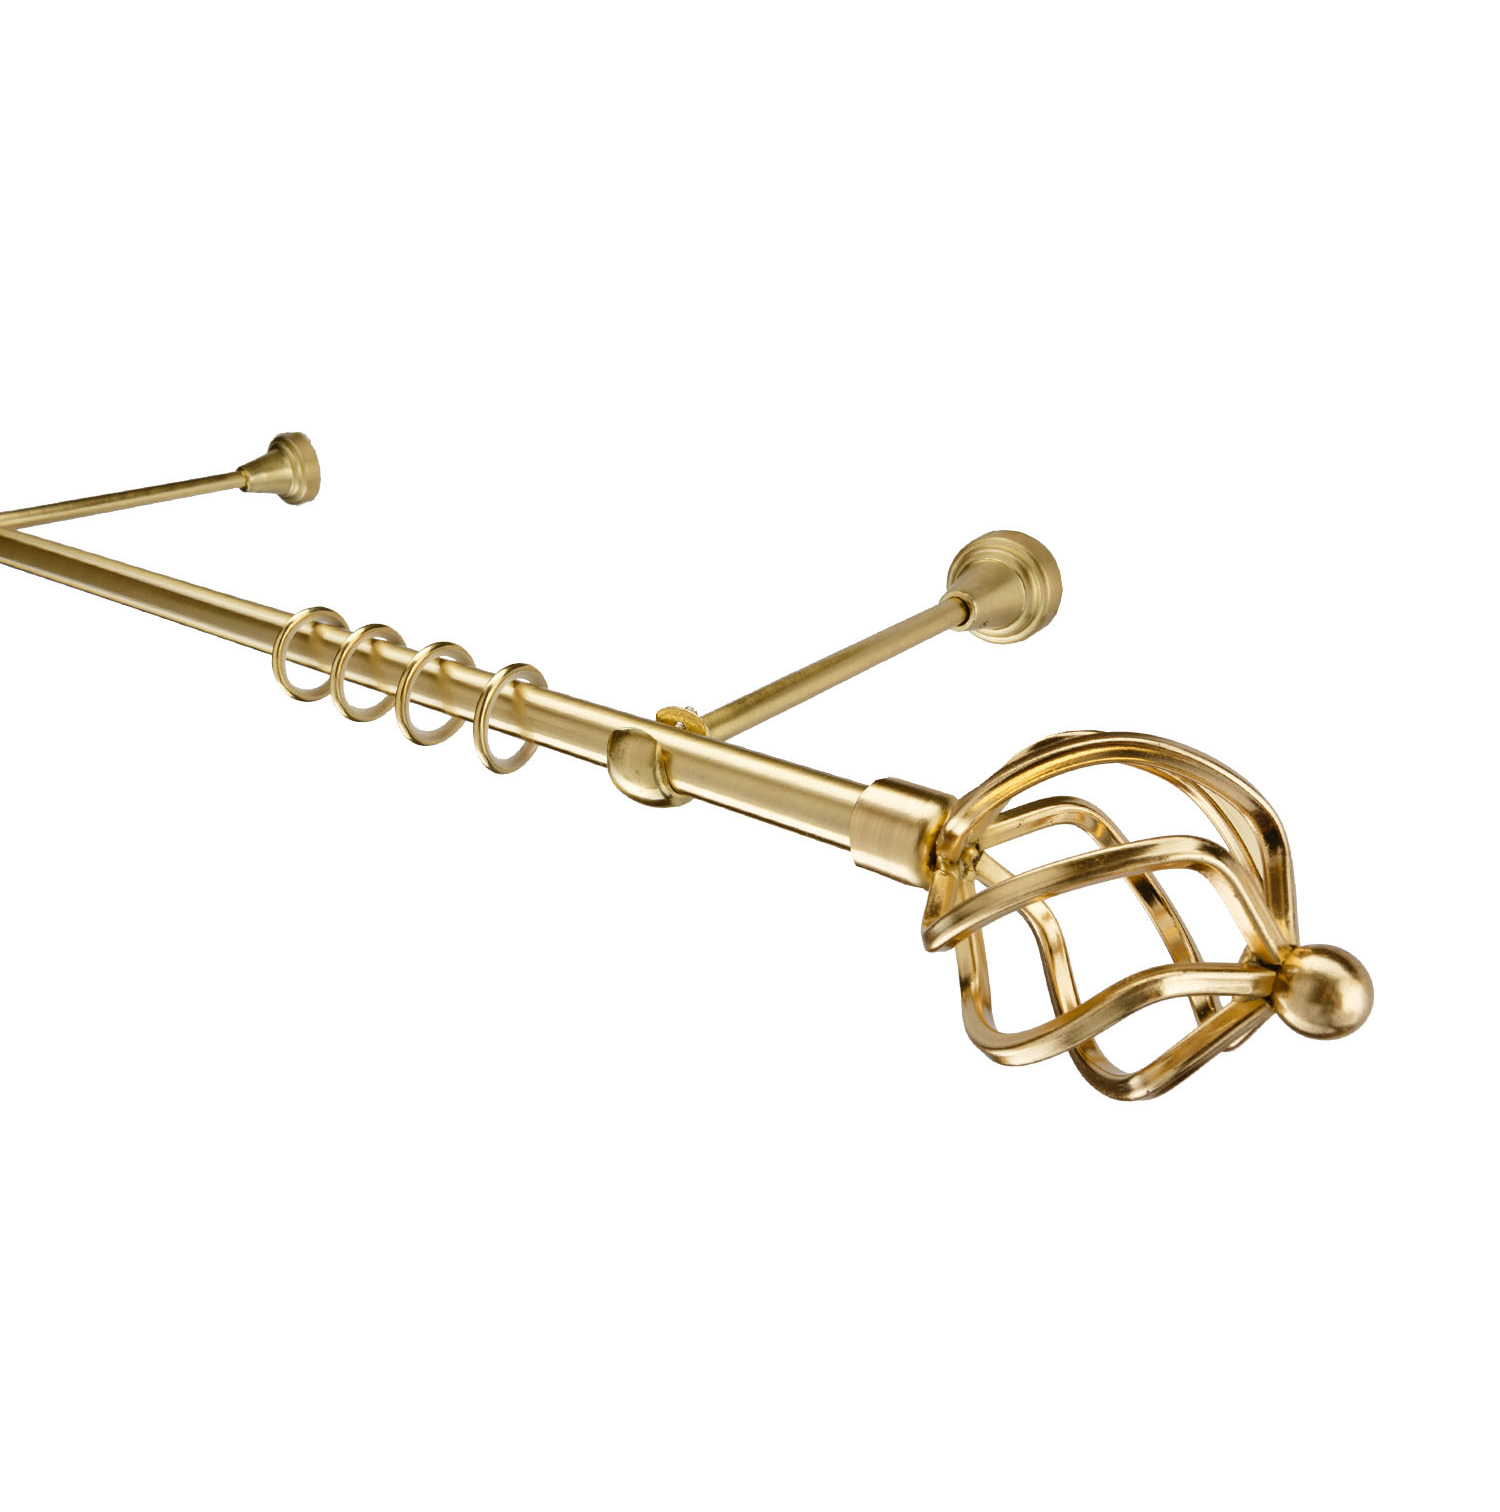 Металлический карниз для штор Солярис, однорядный 16 мм, золото, гладкая штанга, длина 180 см - фото Wikidecor.ru